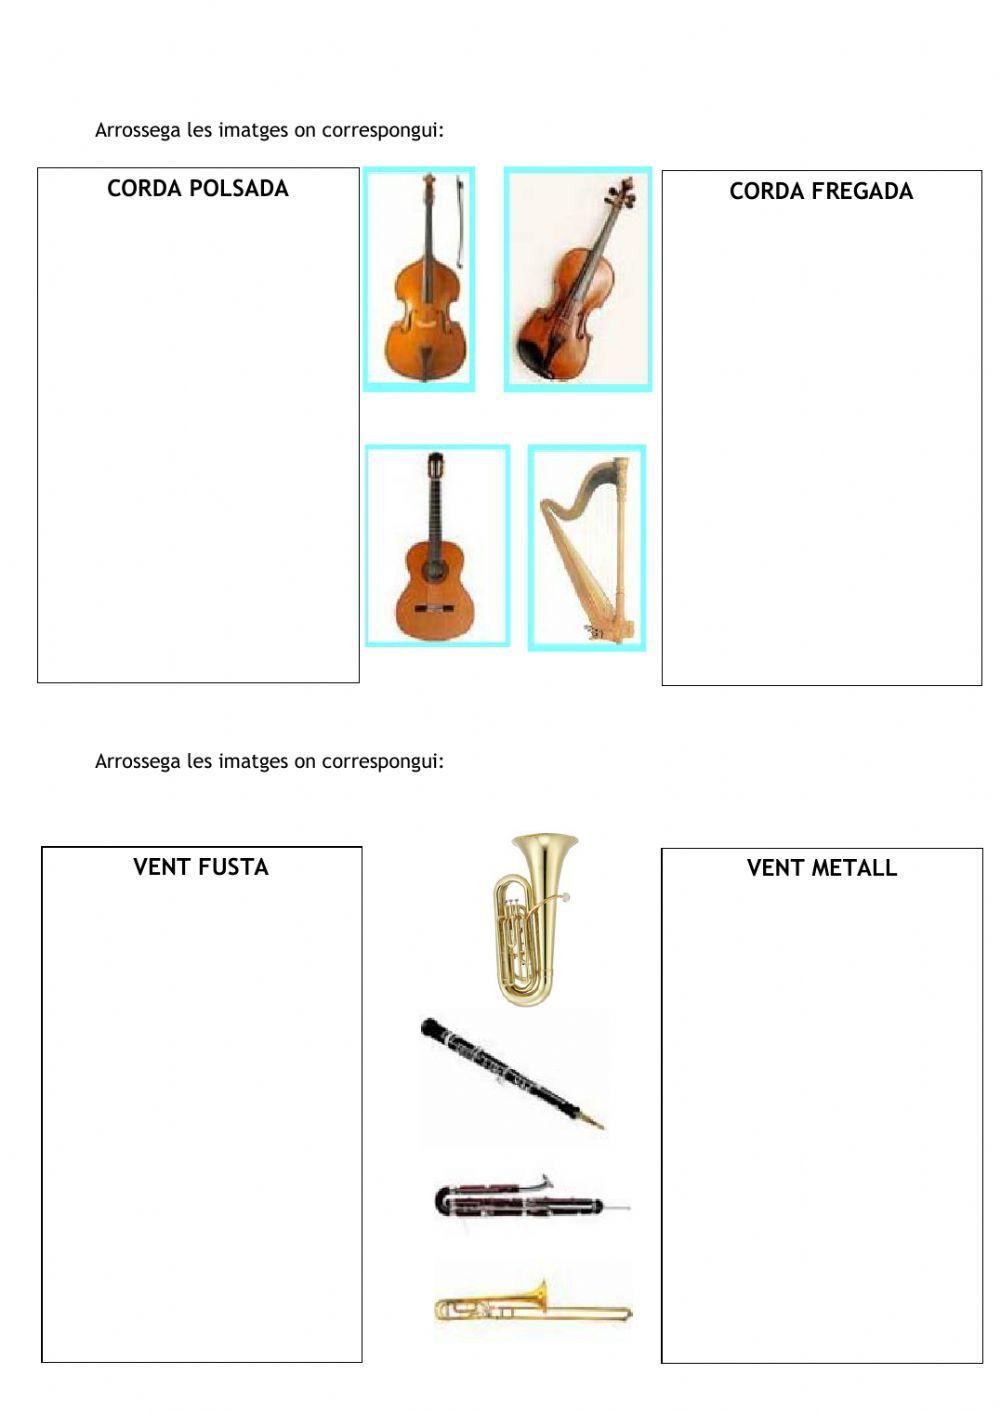 Els instruments de l'orquestra